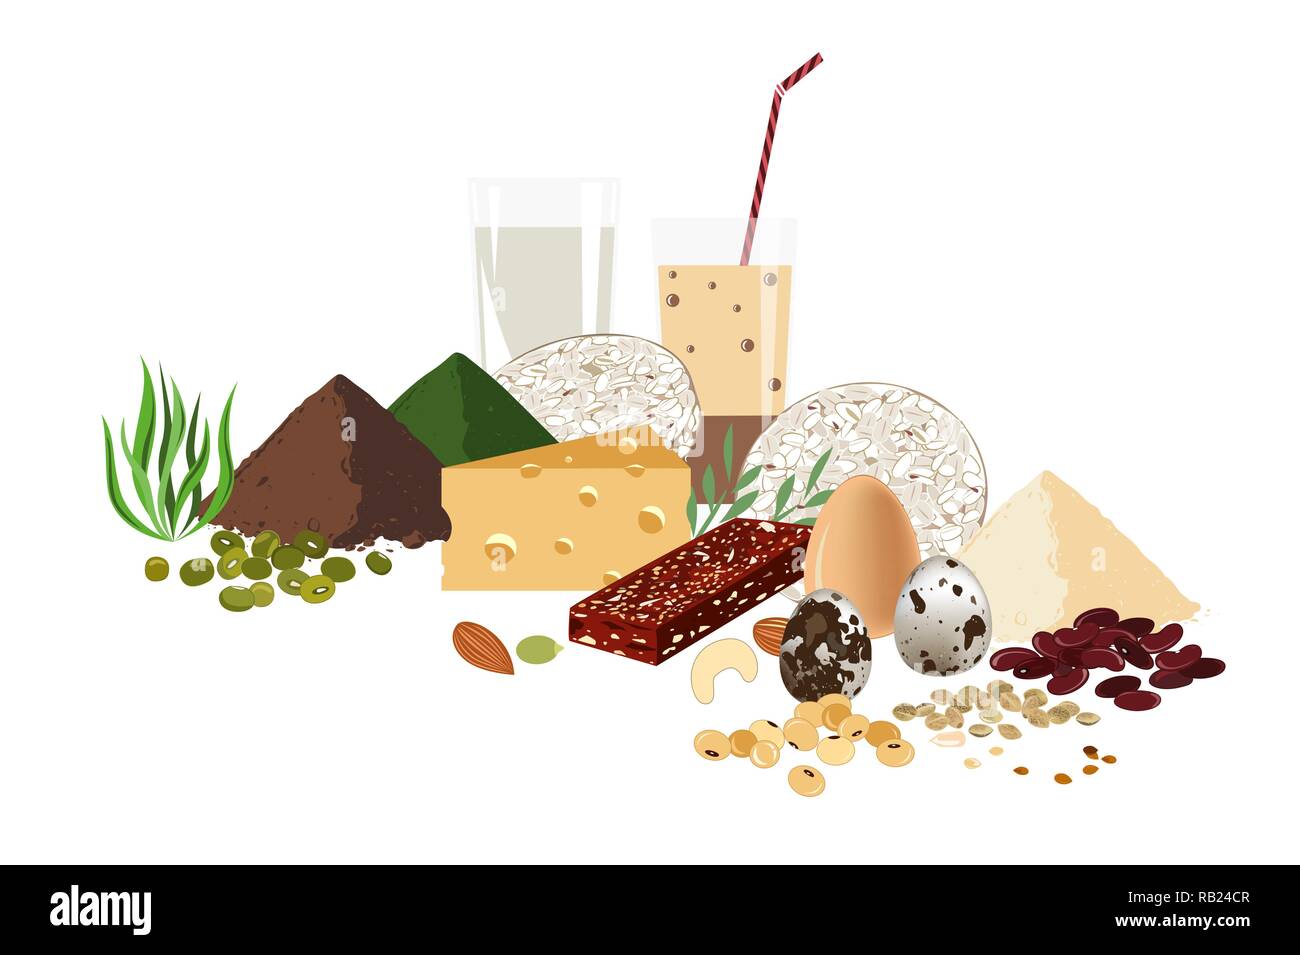 Vegetarische gesunde Ernährung Konzept. Satz von rohen Samen, Müsliriegel, Bohnen und Milch productds. Protein Hintergrund. Stock Vektor